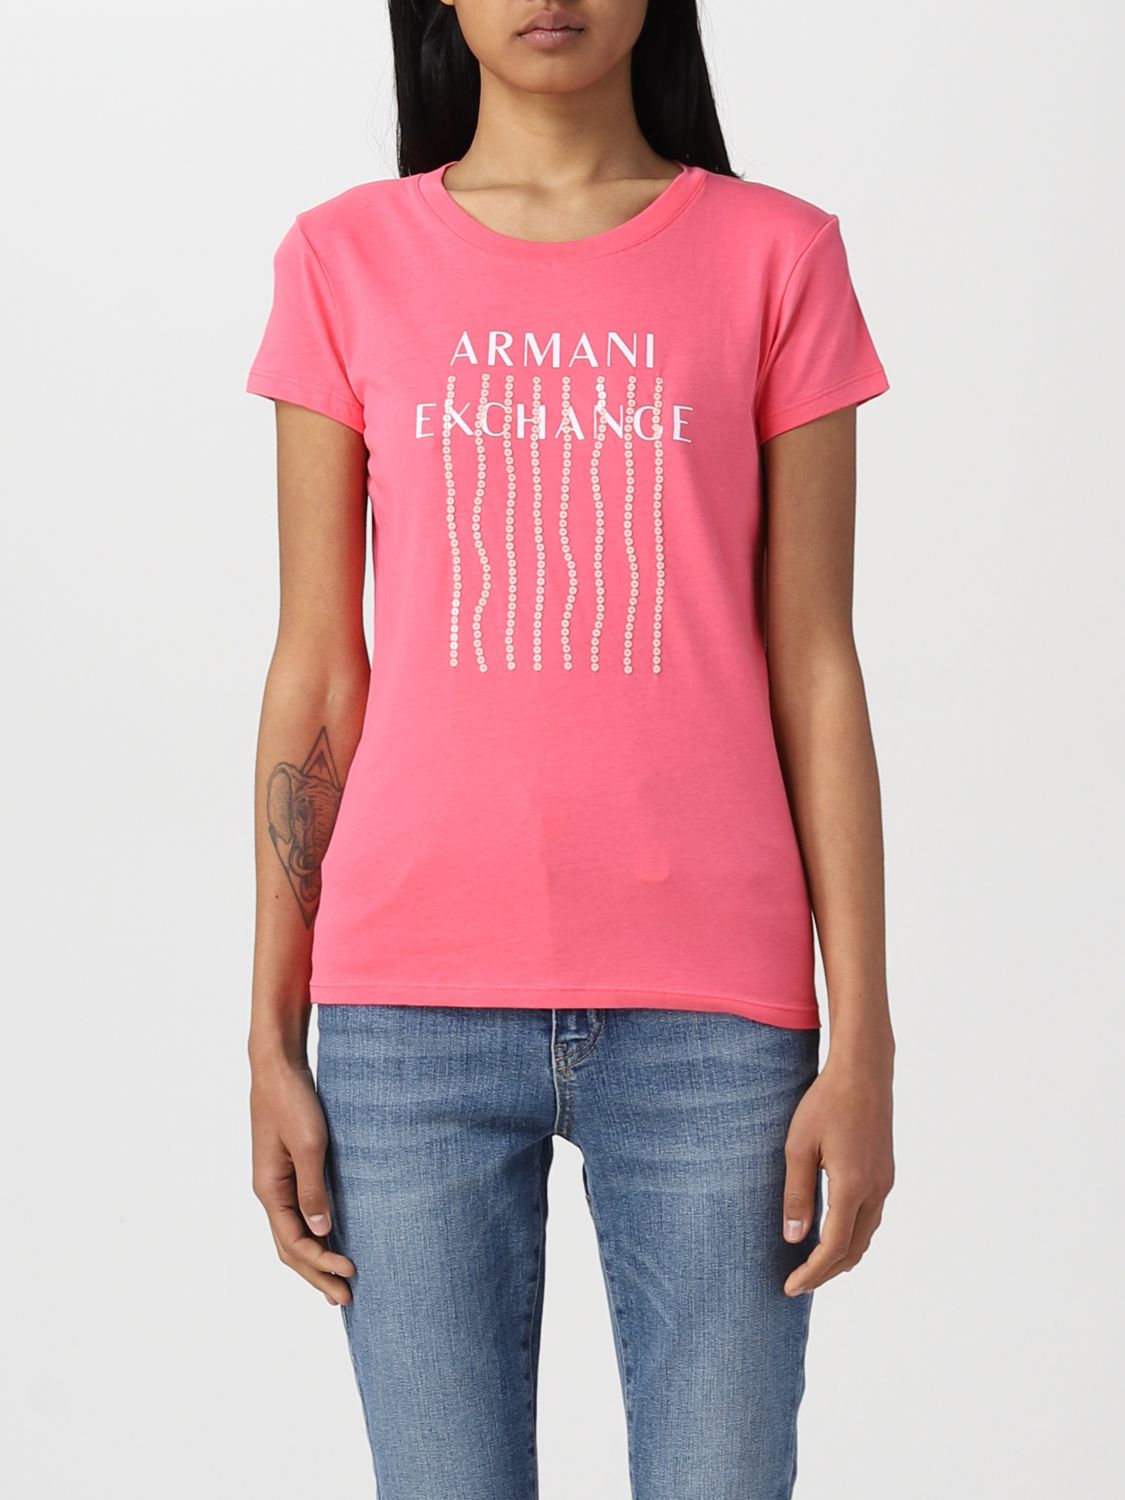 ARMANI EXCHANGE: t-shirt for woman - Fuchsia | Armani t-shirt 3RYTEWYJ8QZ online GIGLIO.COM